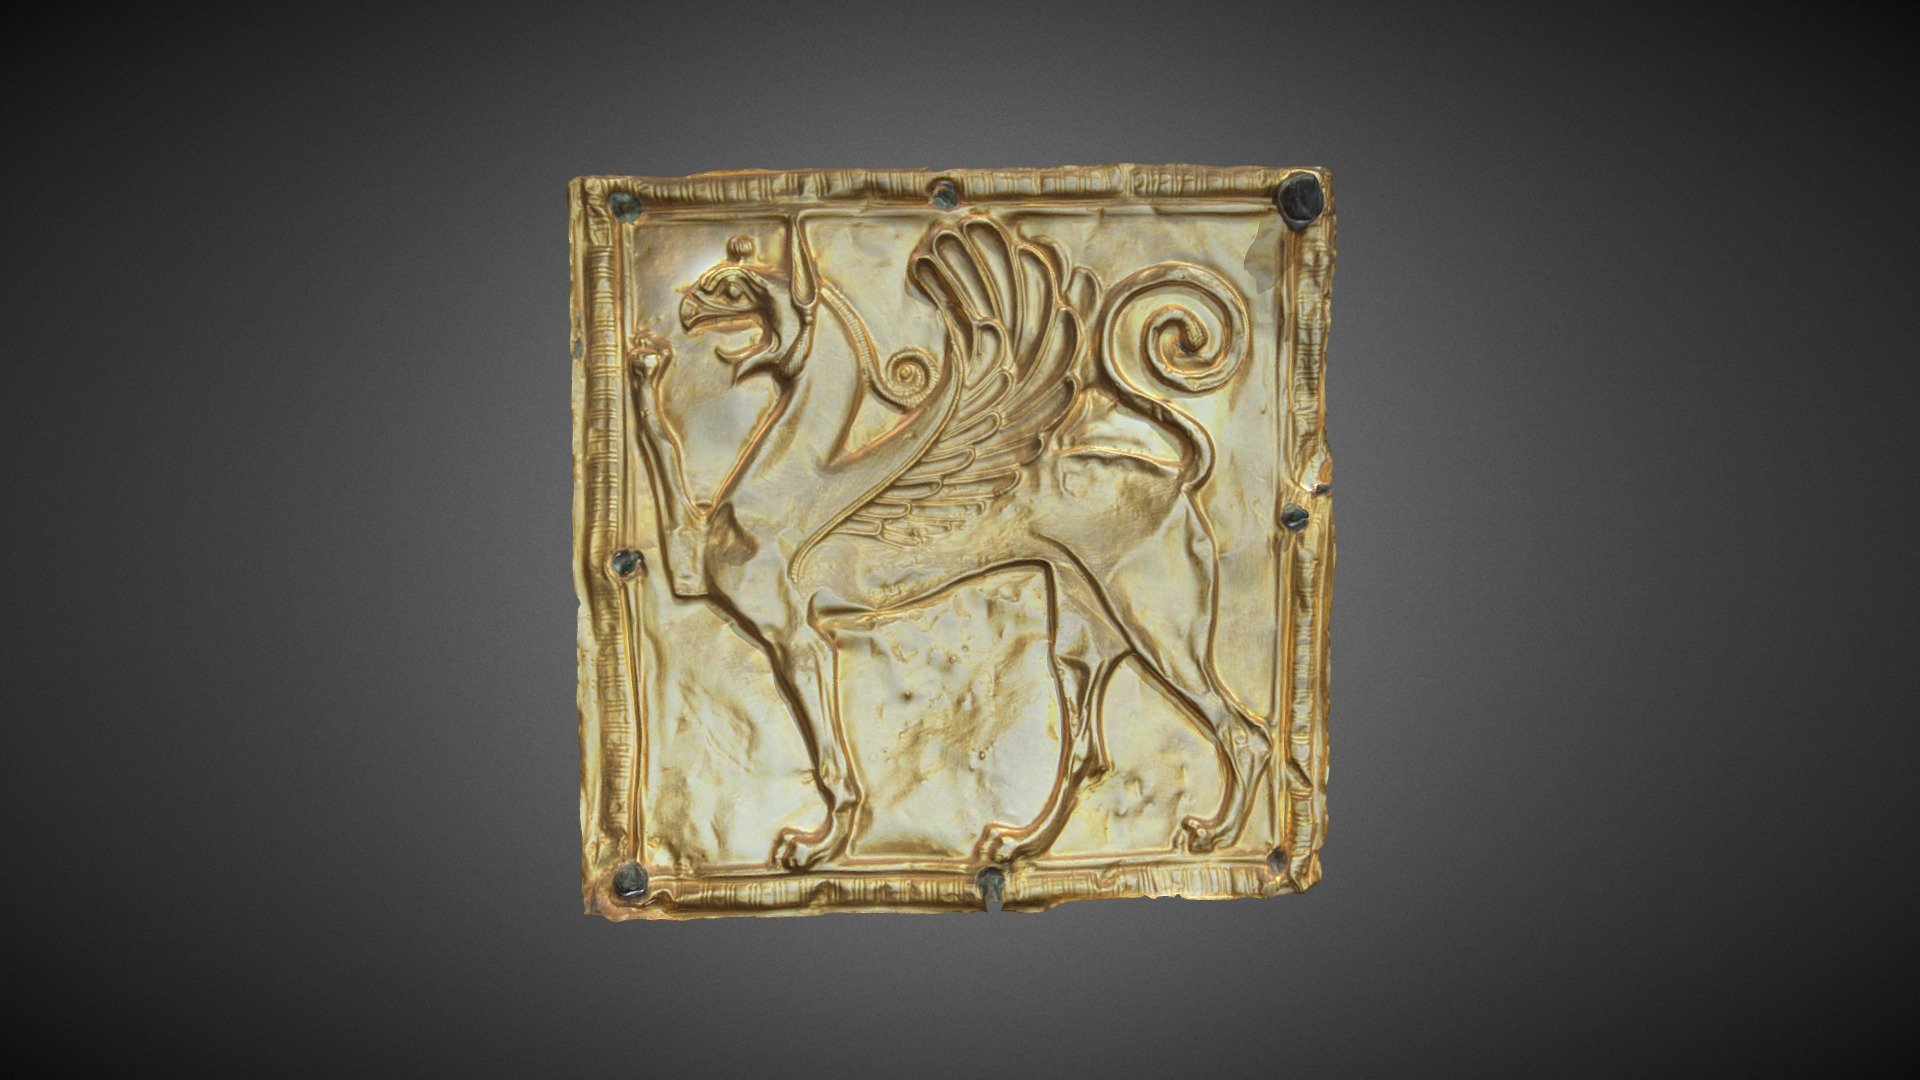 Επιστήθιο κόσμημα από το χρυσελεφάντινο άγαλμα της Άρτεμης

Χρυσό τετράγωνο έλασμα με έκτυπη παράσταση γρύπα, στερεωμένο με καρφιά πάνω σε χάλκινη πλάκα που κοσμούσε το ένδυμα της μορφής ως επιστήθιο κόσμημα. 6ος αιώνας π.Χ.

Breast jewelry of the chryselephantine statue of Artemis

Square plate of gold with relief griffin riveted on a bronze plaque, which decorated the figure’s garment as breast jewelry. 6th century BC 3d model